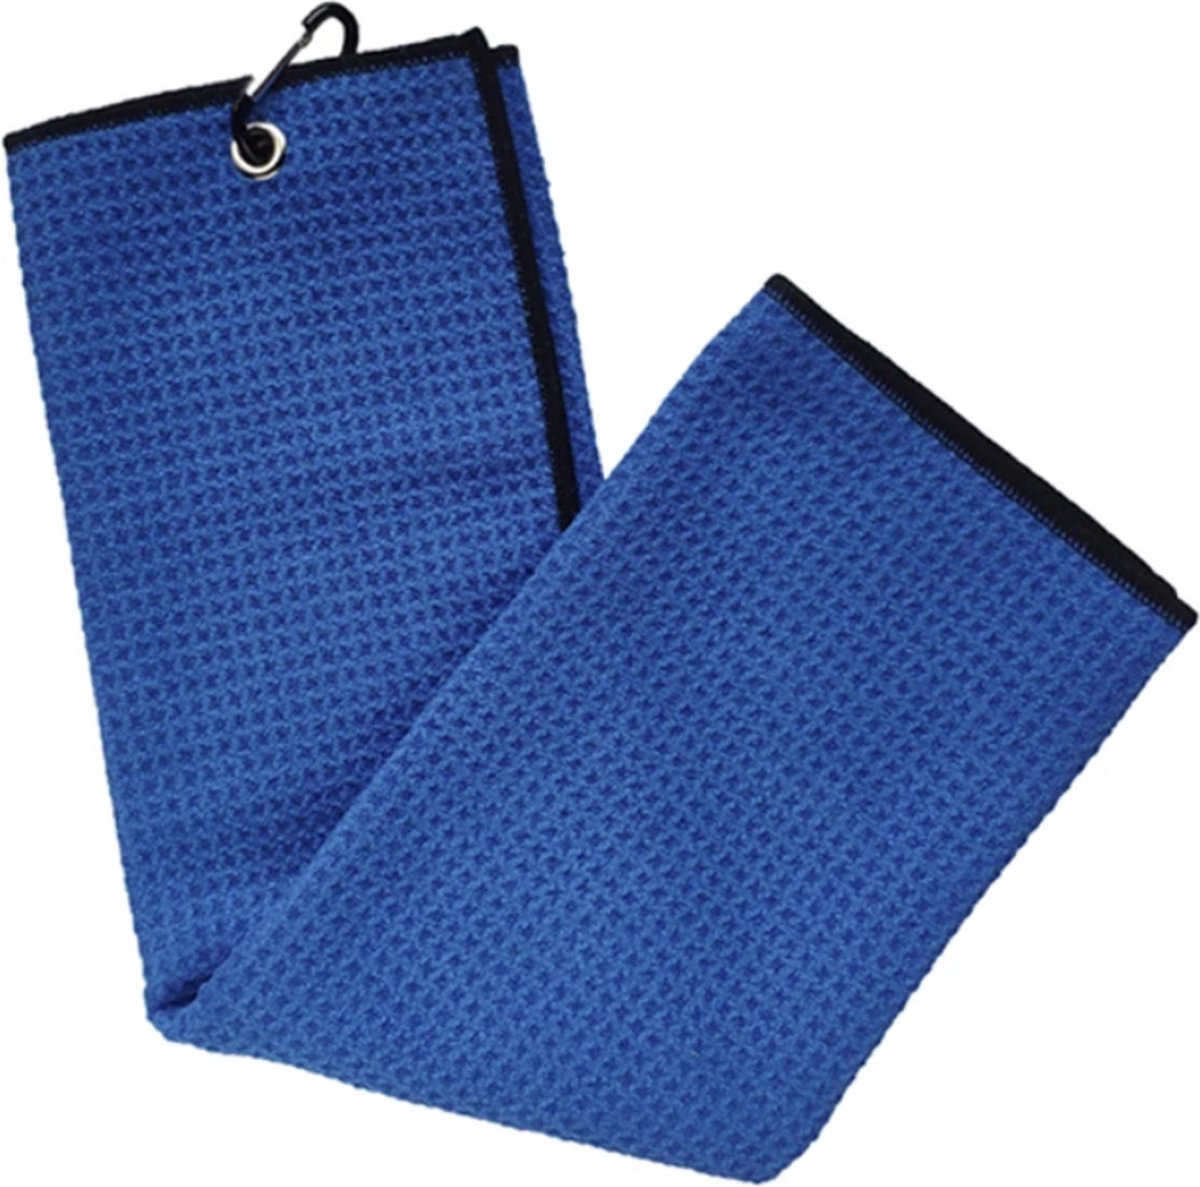 Microfiber Golf Handdoek - Snel drogend - Grote haak - Blauw - 30 cm x 50 cm - Golfhanddoek - ATHLIX